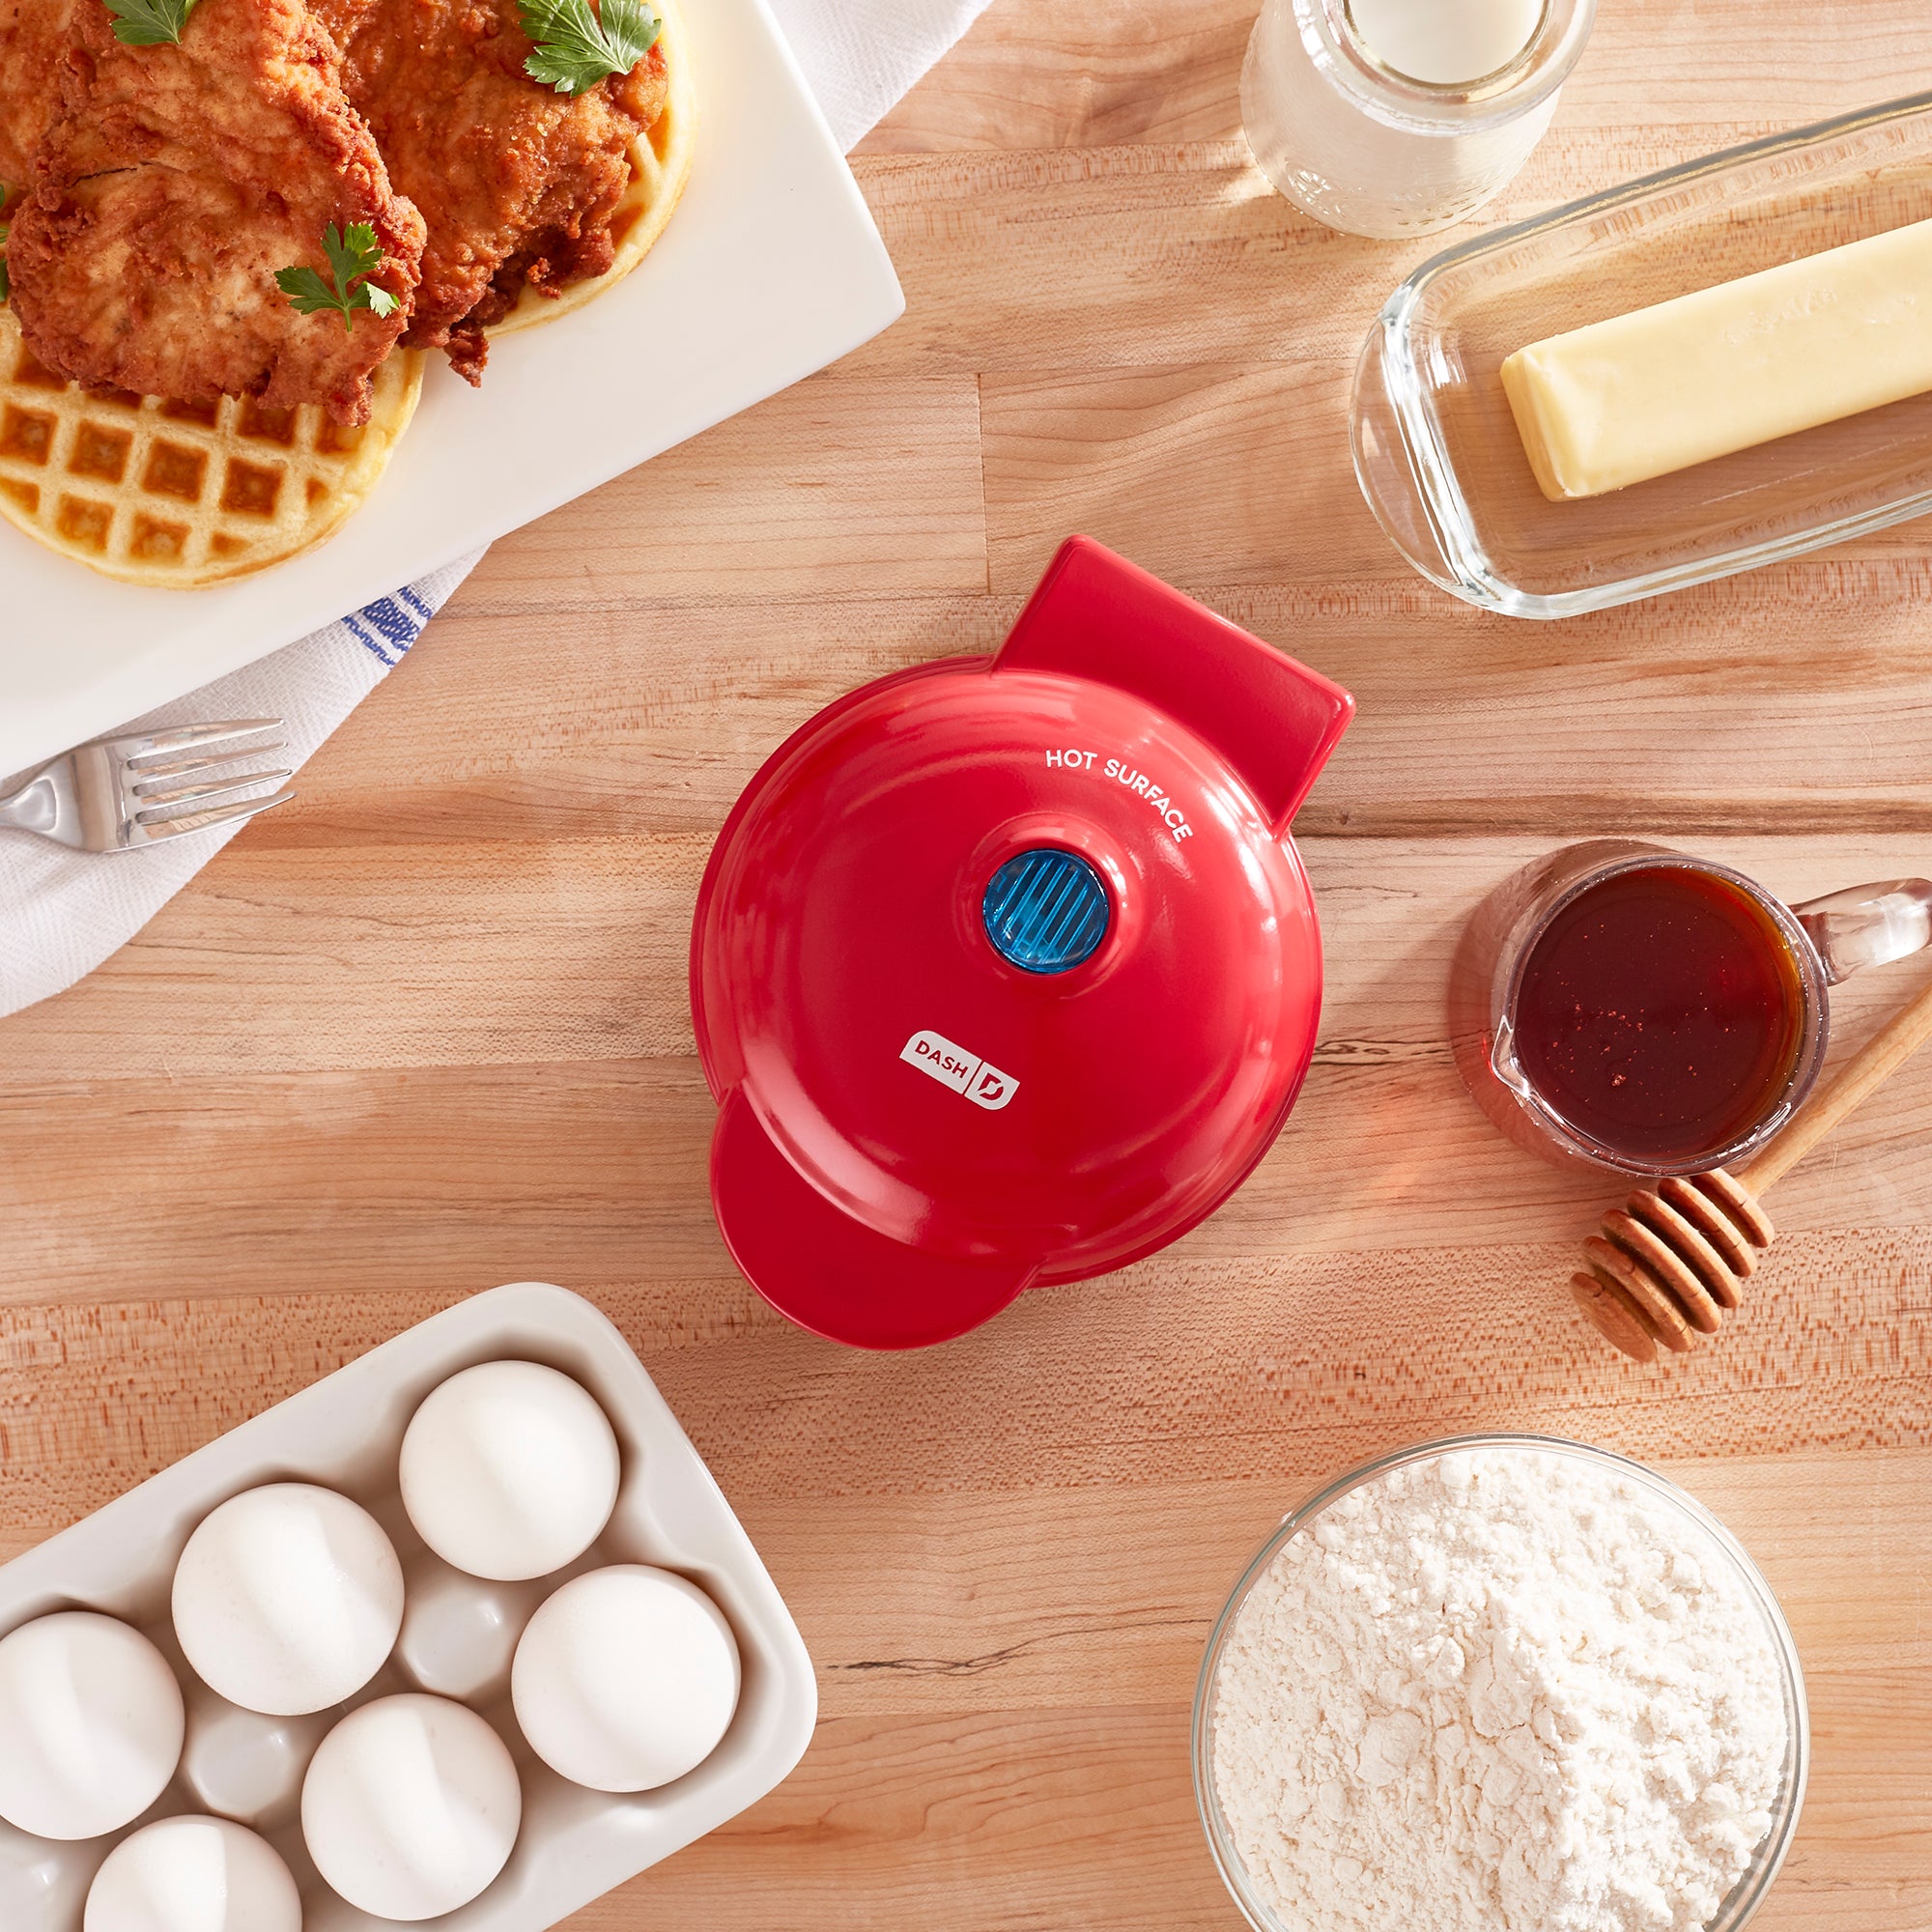  DASH Mini Waffle Stick Maker 4 inch, Aqua: Home & Kitchen